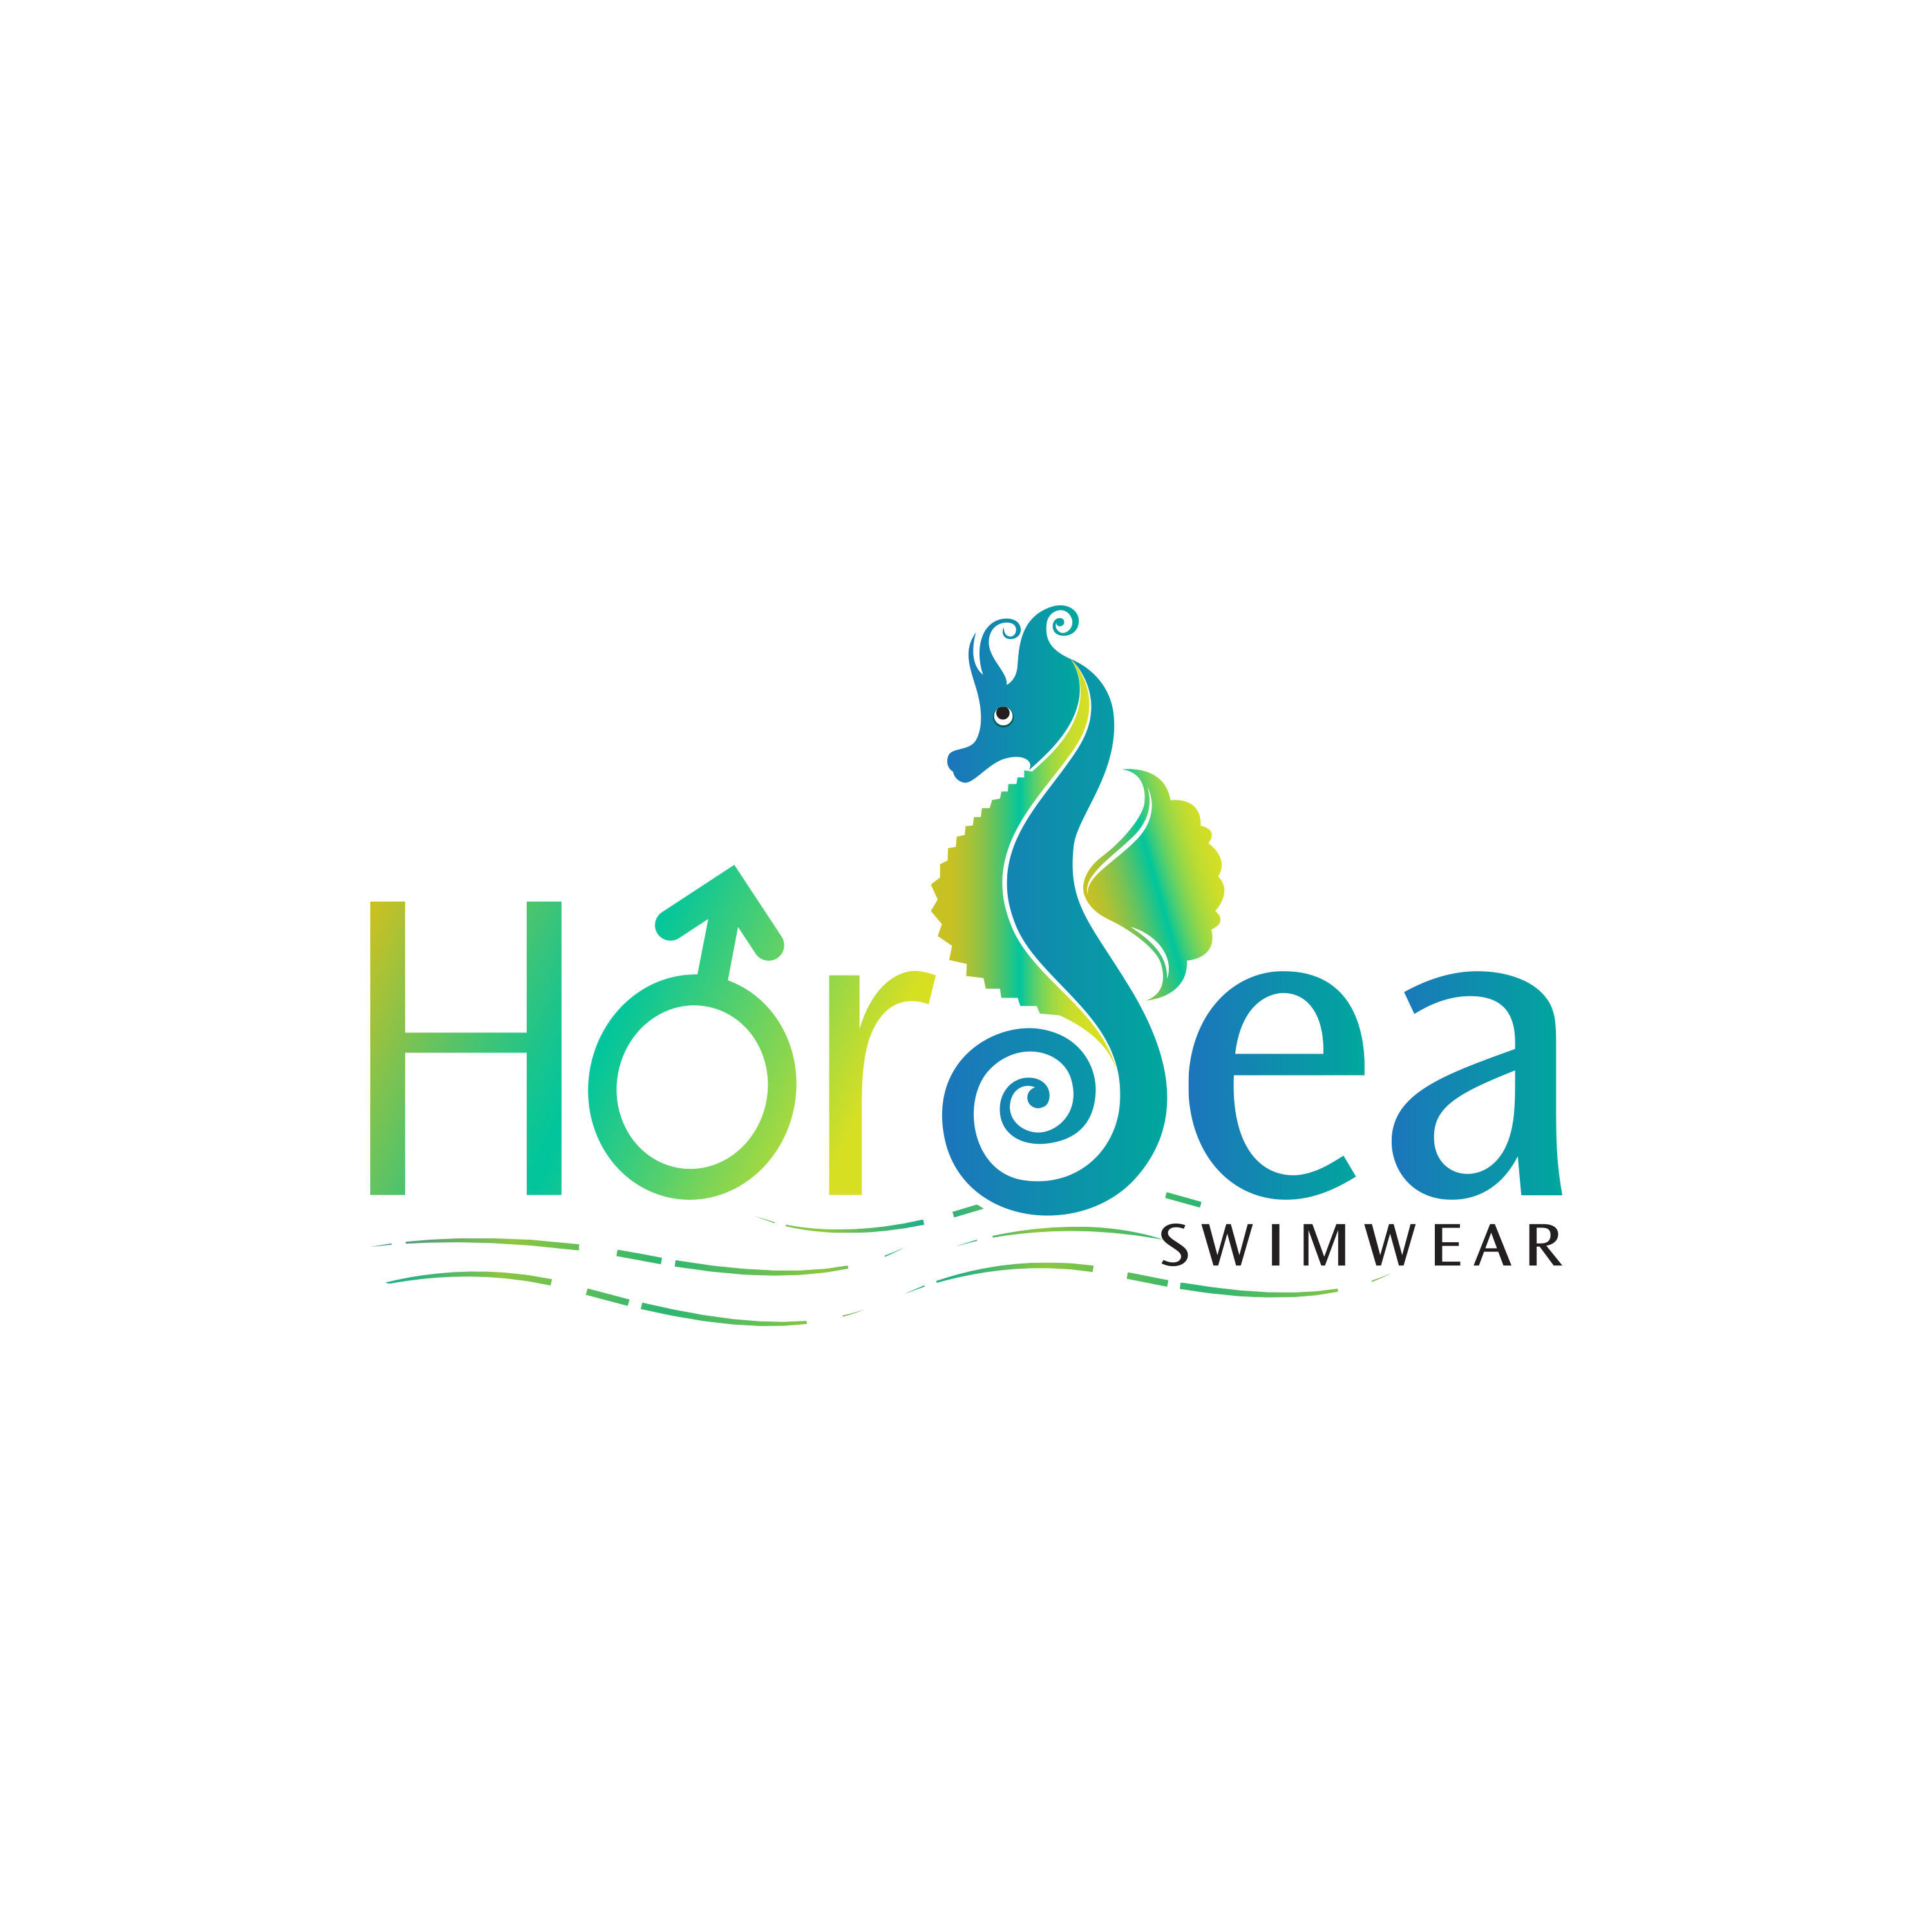 Horsea Swimwear